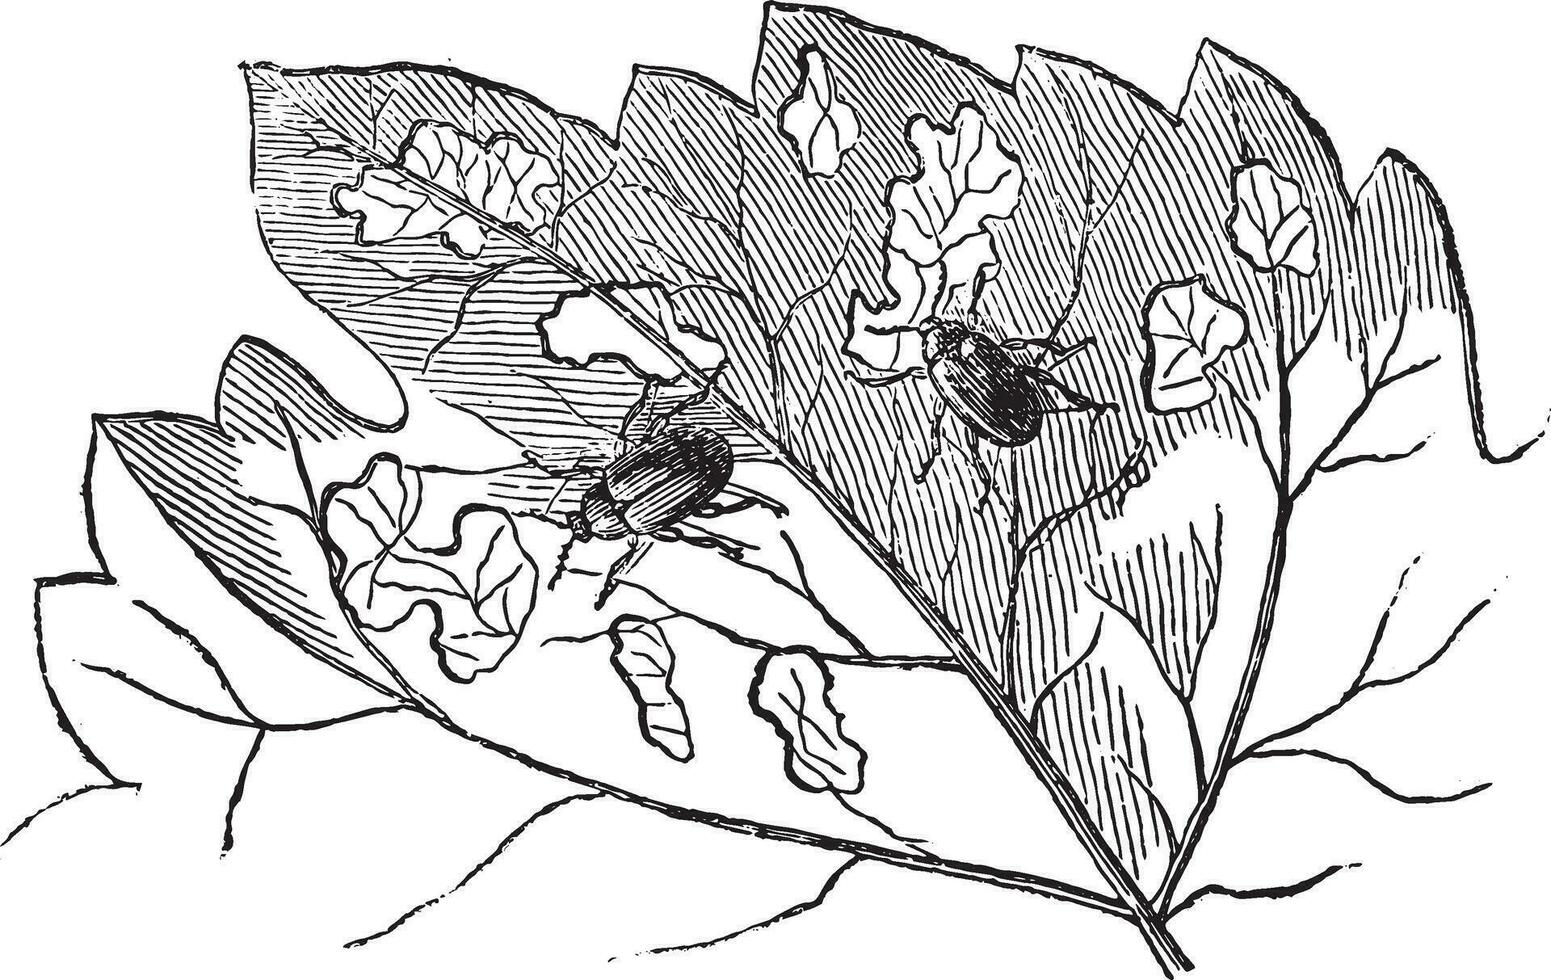 occidental grain de raisin chrysomèle des racines, ancien gravure. vecteur